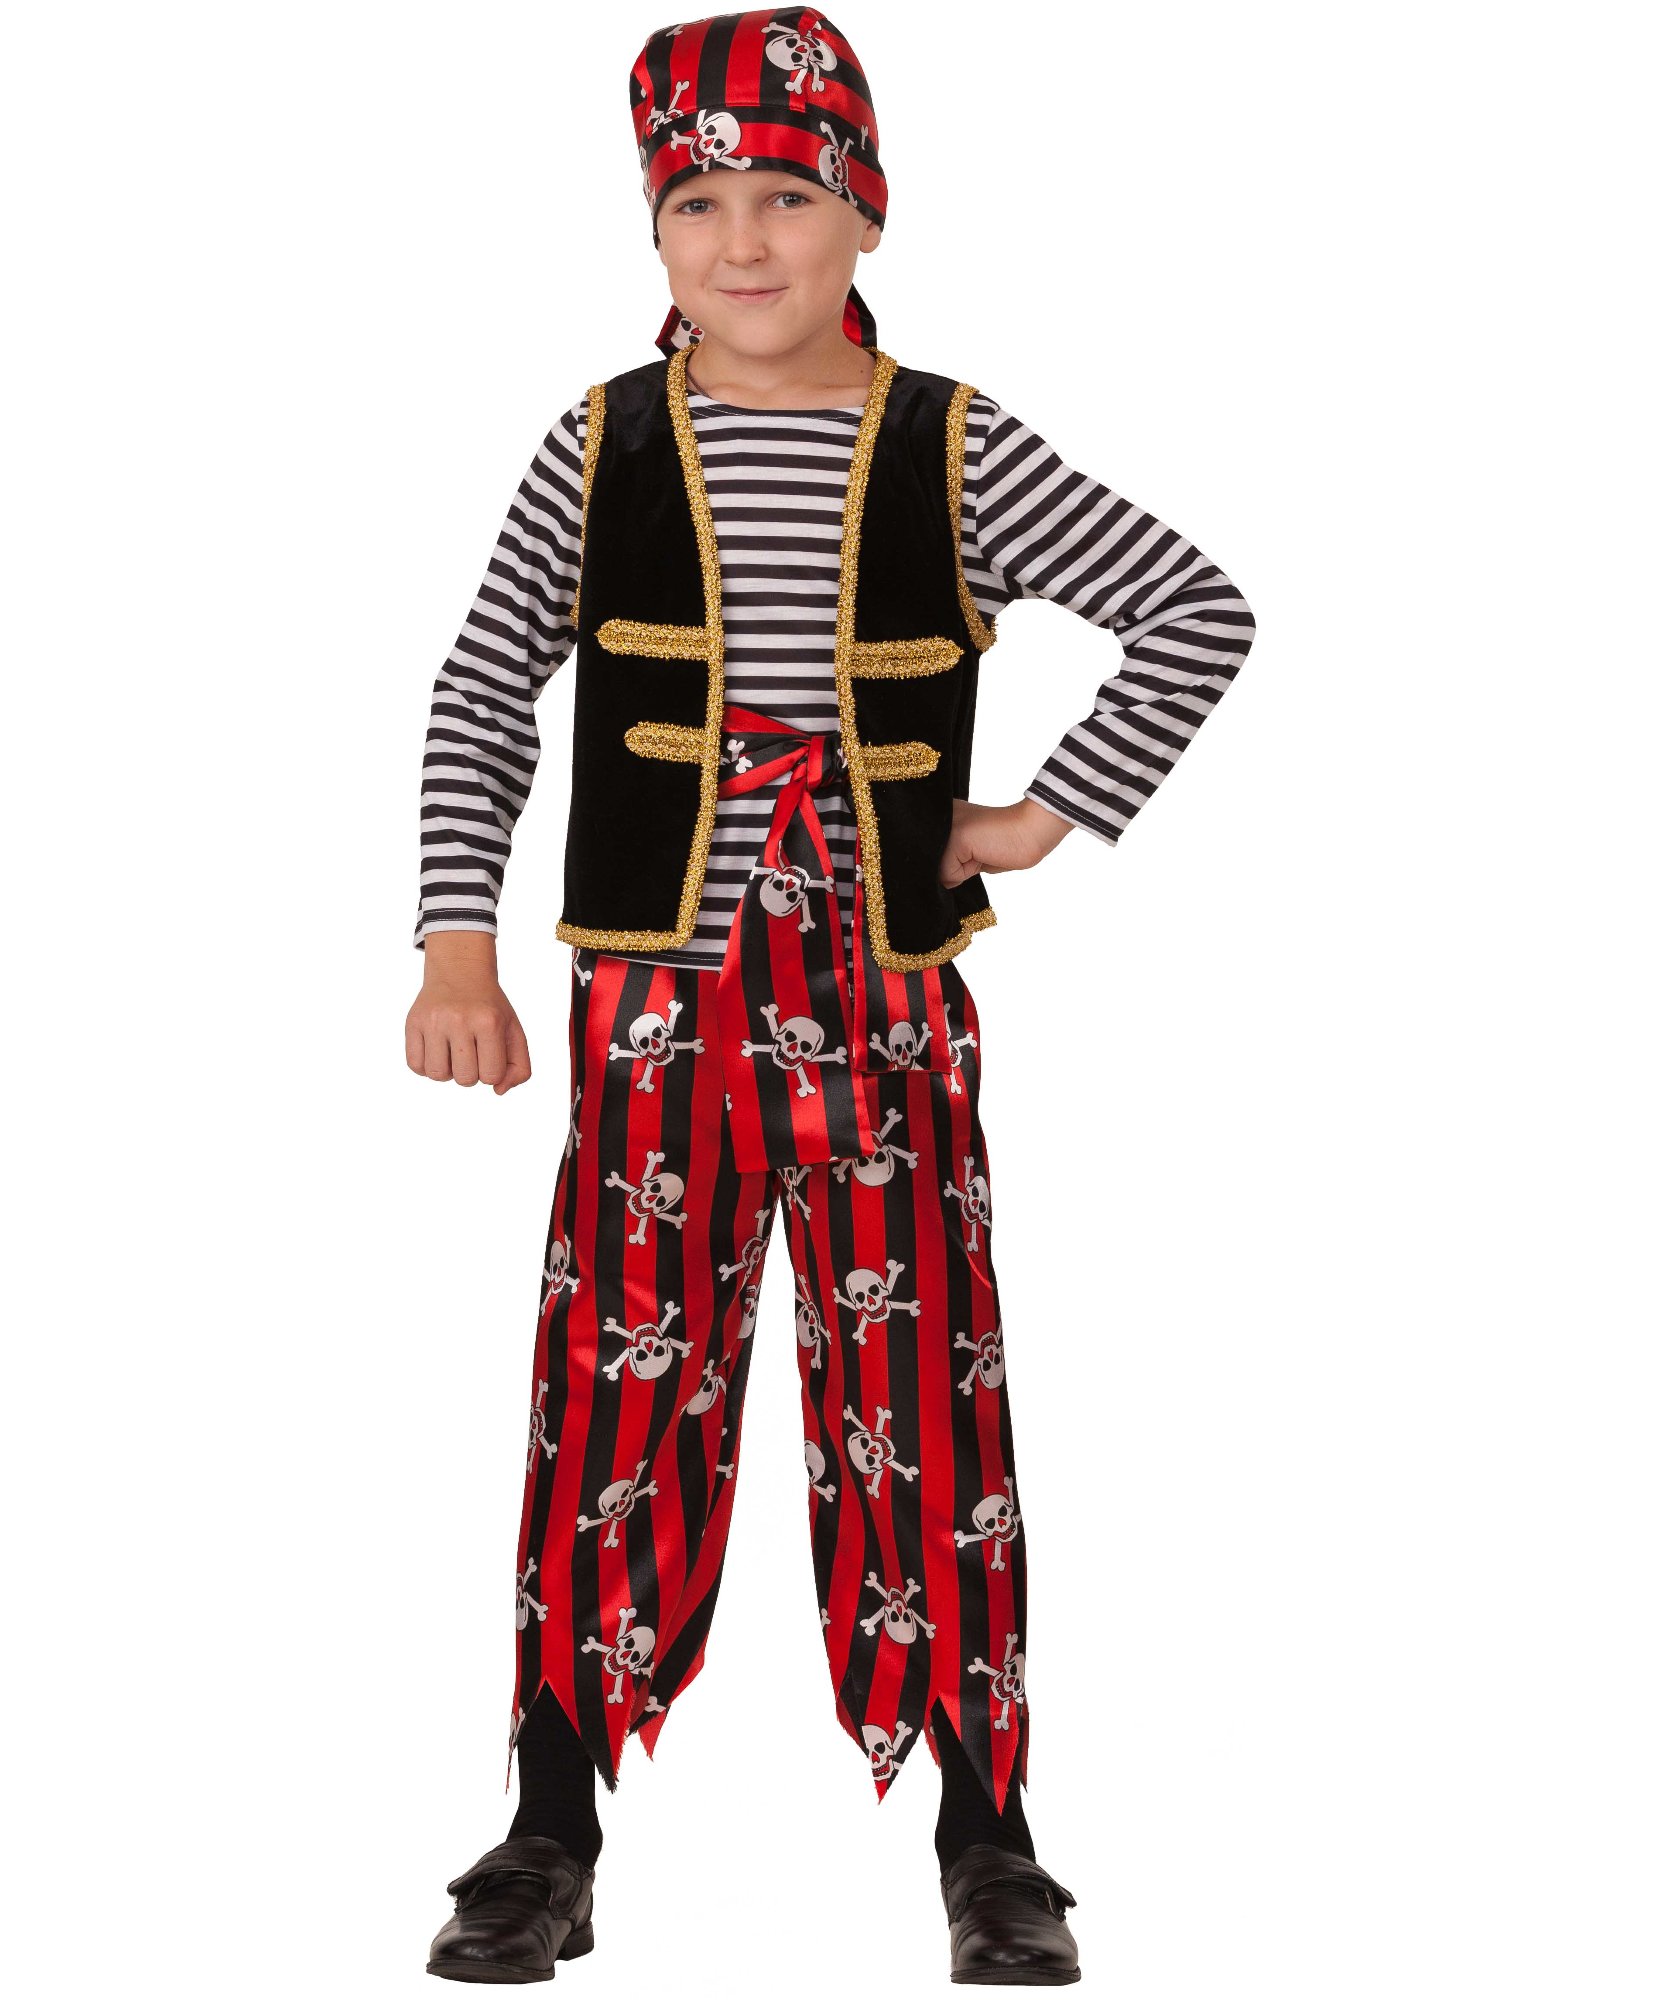 Купить костюмы пиратов и разбойников в Санкт-Петербурге недорого, цены, фото на paraskevat.ru